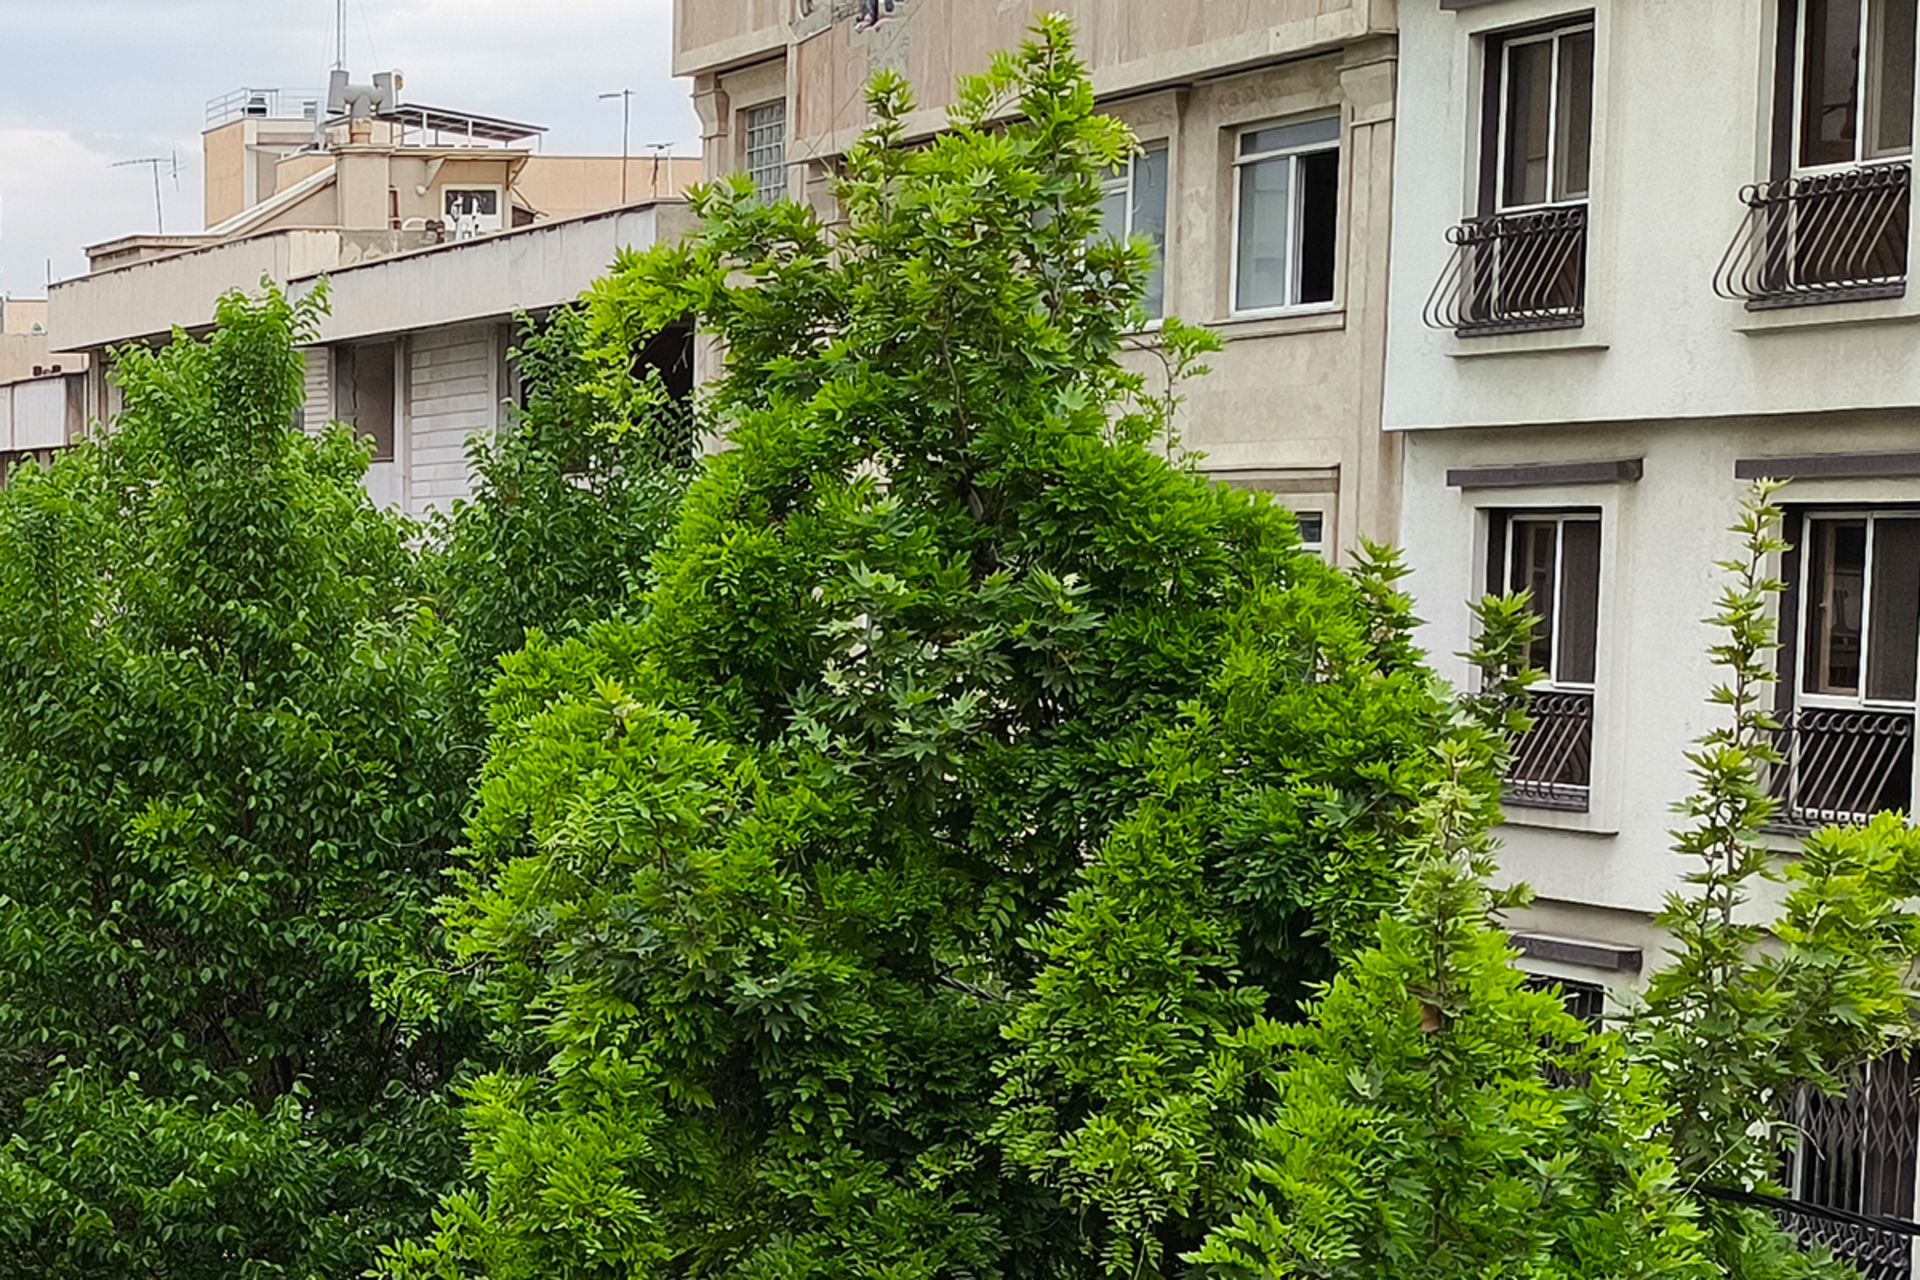 نمونه عکس کراپ شده دوربین اصلی پوکو X6 پرو در محیط روشن خارجی از یک کوچه با ساختمان ها و درختان